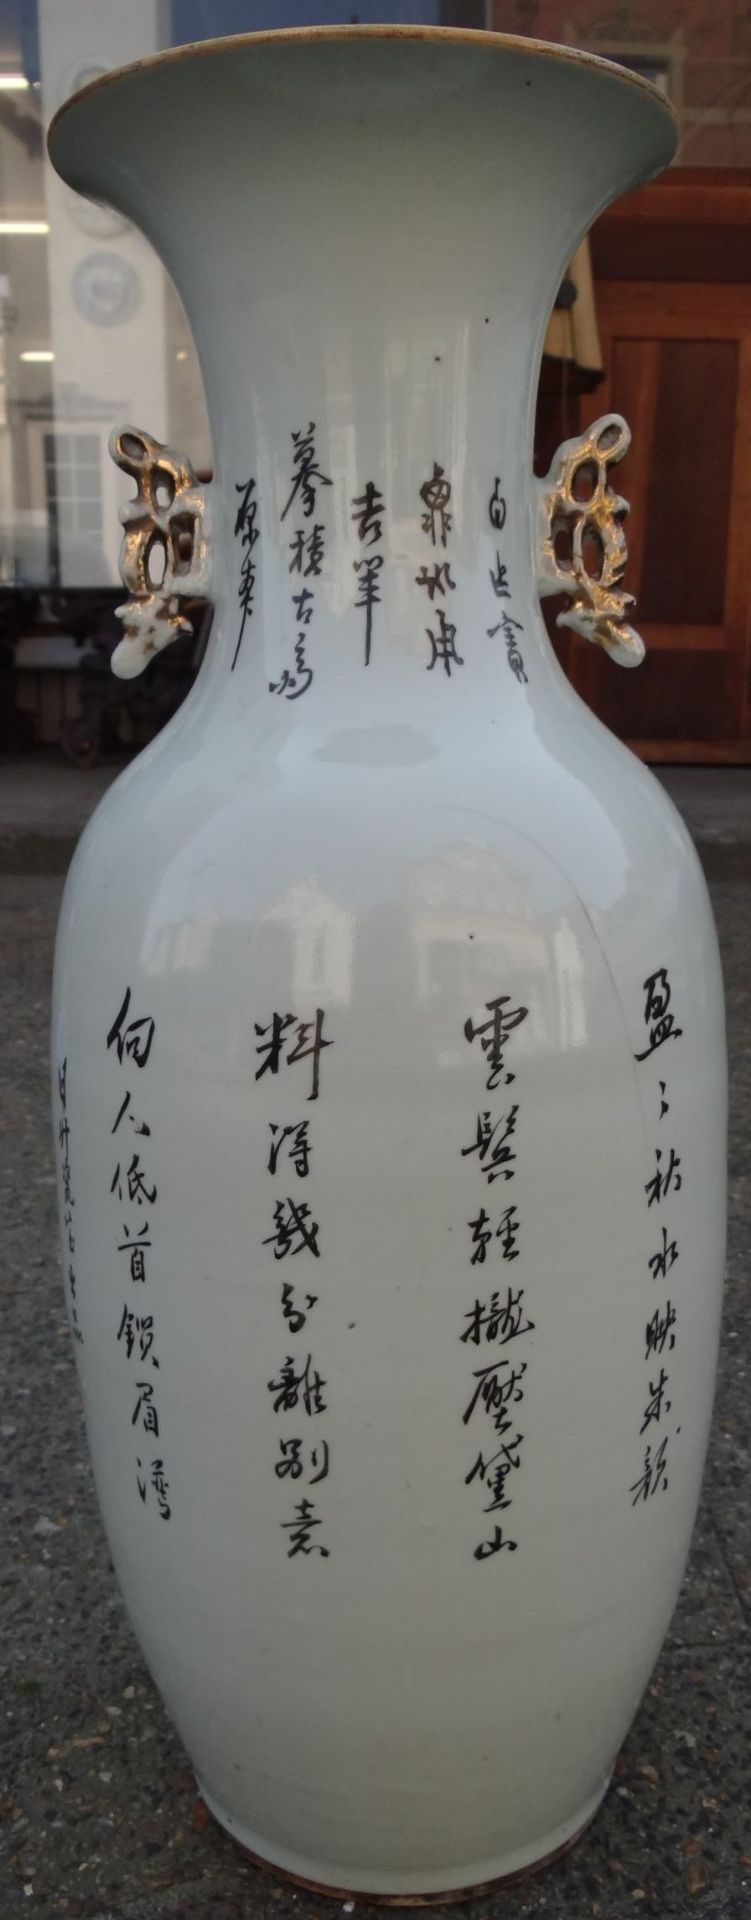 *hohe China-Vase mit figürlicher Malerei, älter, H-59 cm, D-19 cm, ein langer Spannungsri - Bild 6 aus 9